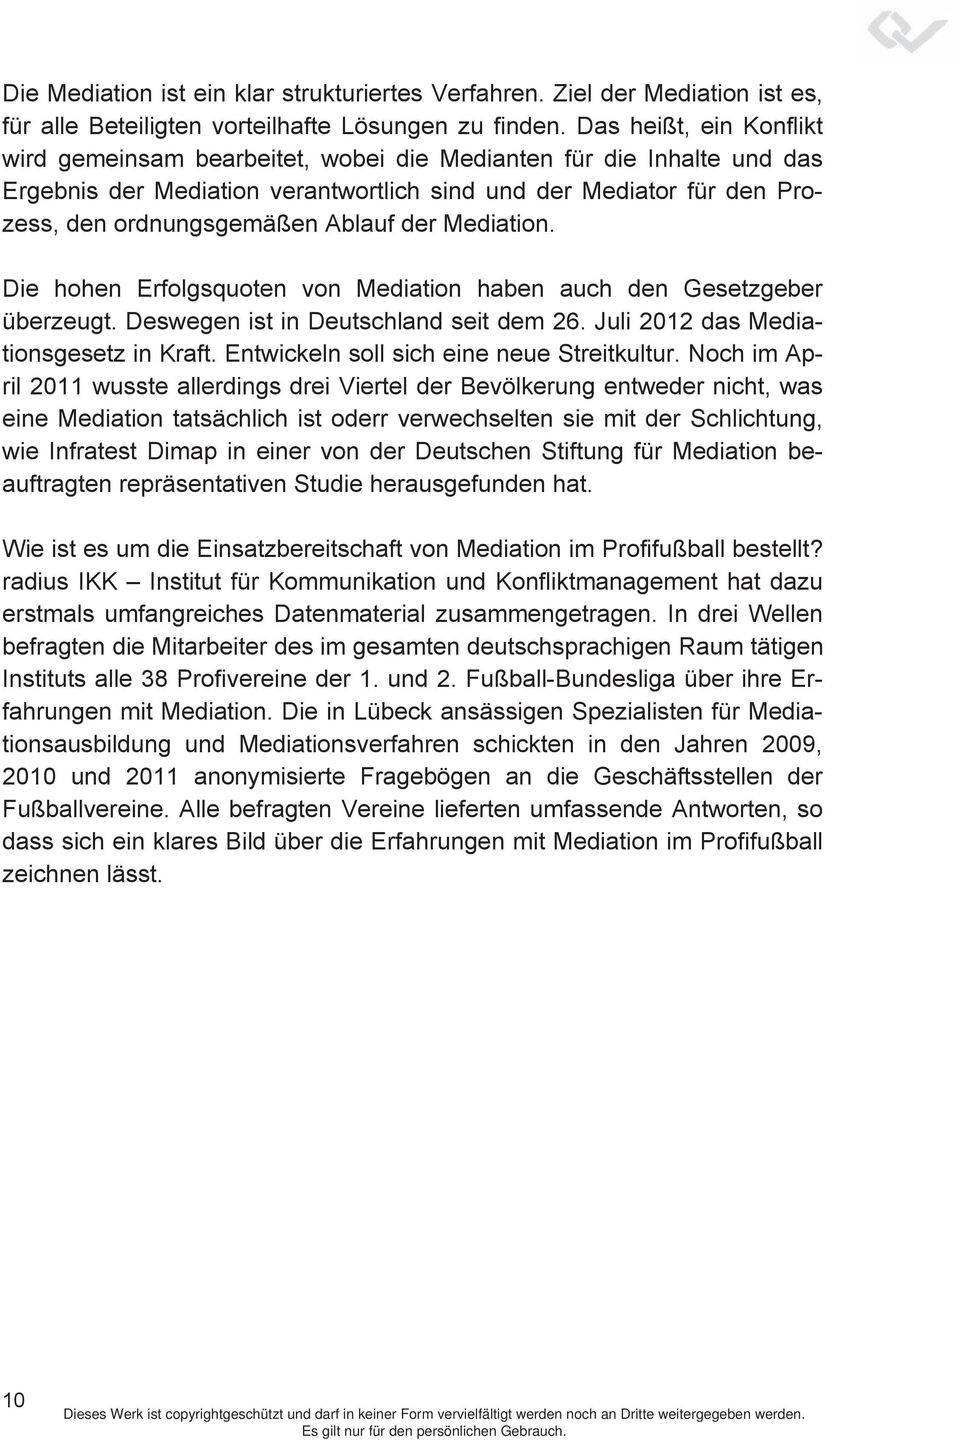 der Mediation. Die hohen Erfolgsquoten von Mediation haben auch den Gesetzgeber überzeugt. Deswegen ist in Deutschland seit dem 26. Juli 2012 das Mediationsgesetz in Kraft.